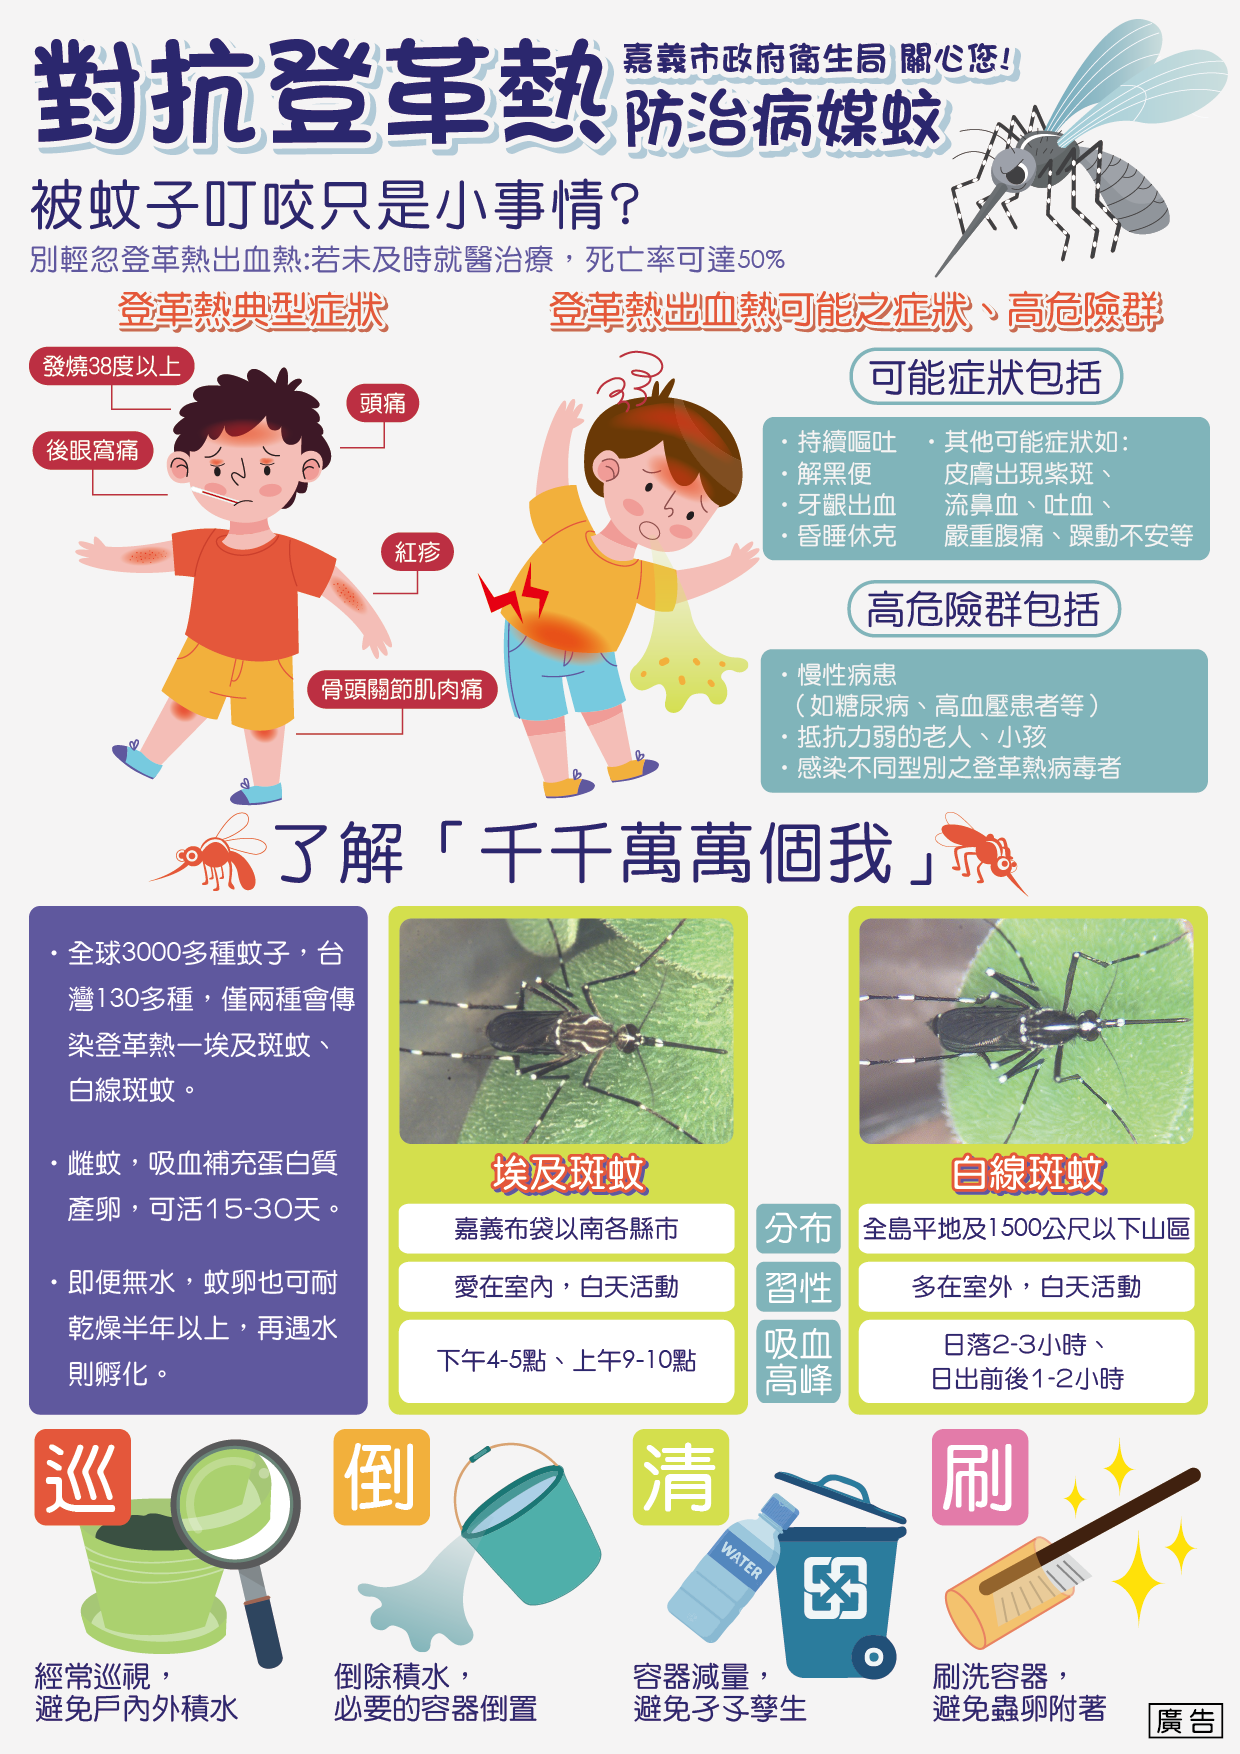 广东短柄大蚊-中国昆虫生态-图片